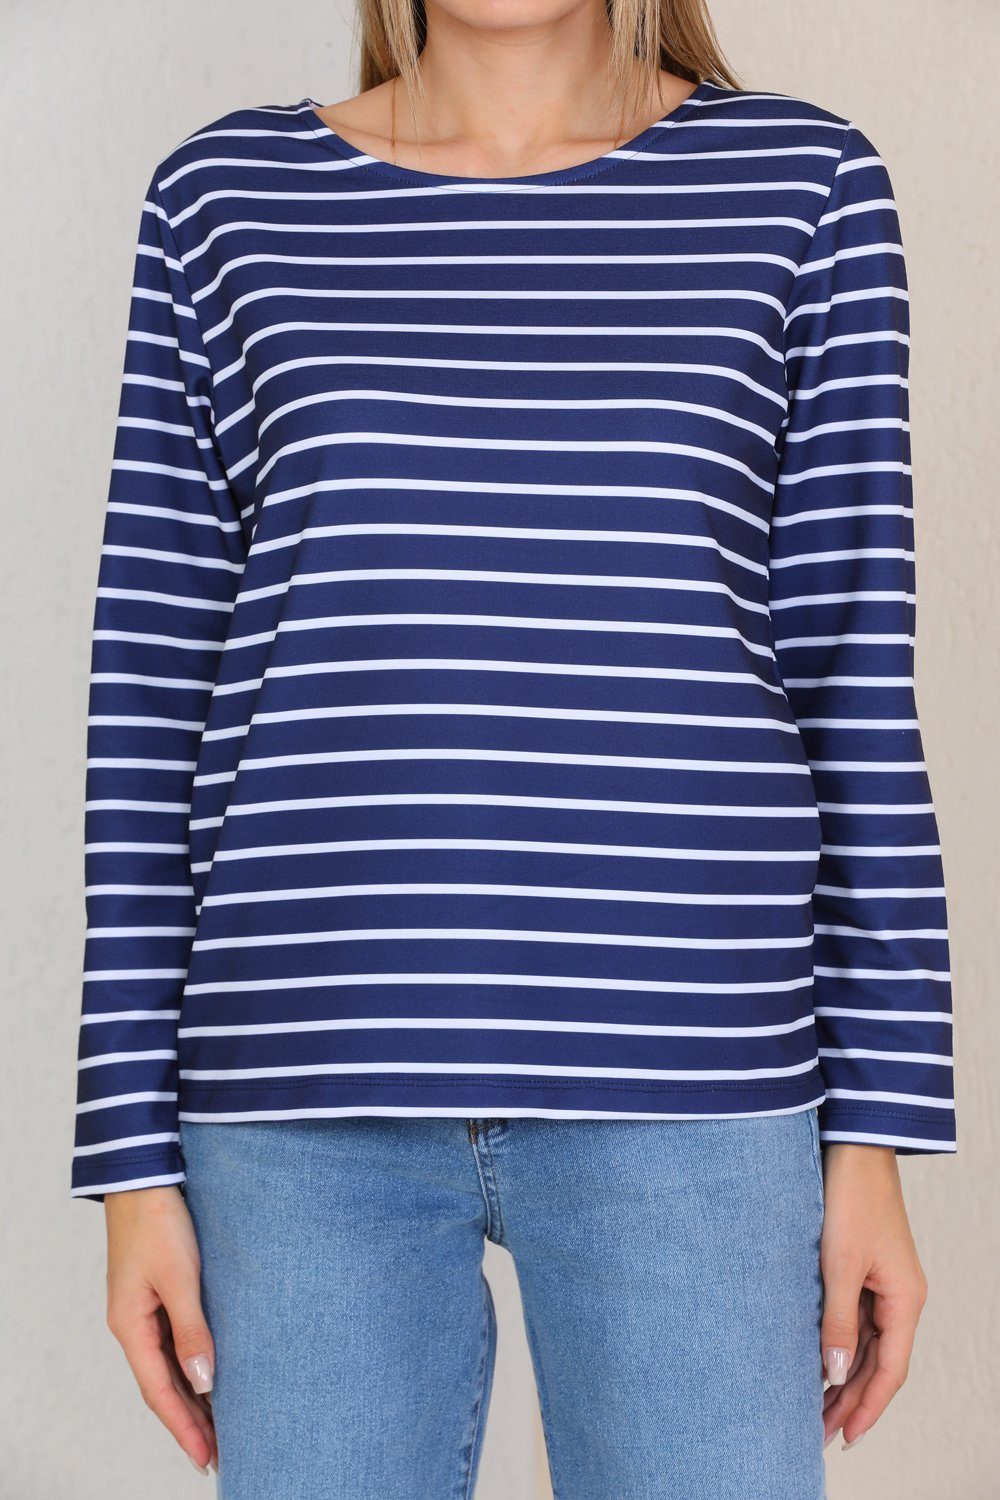 Bongual Langarmshirt Sweatshirt mit Streifen Basic